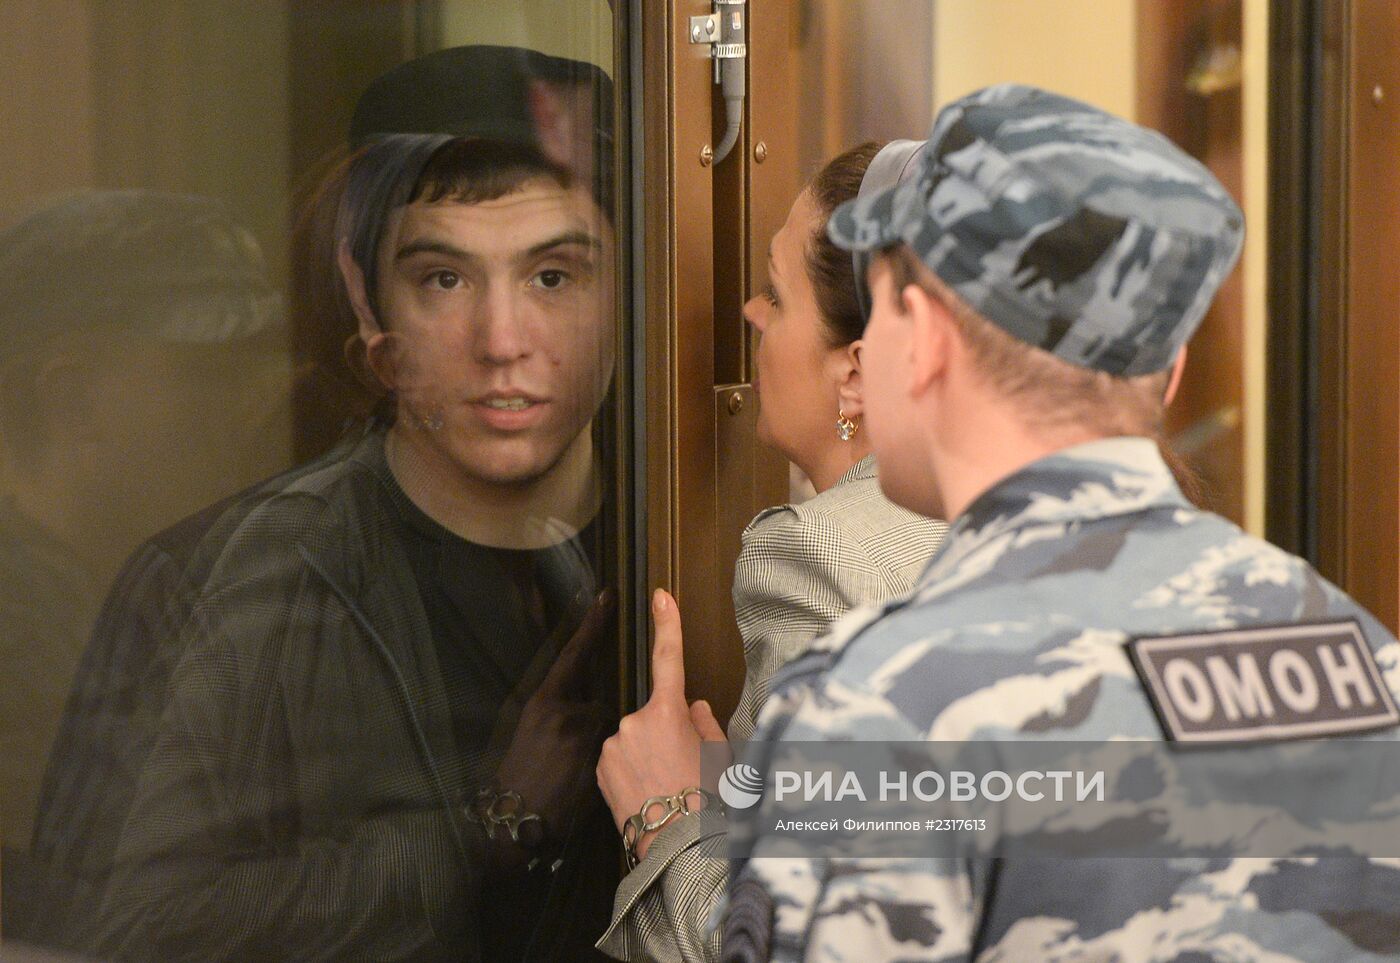 Оглашение приговора по делу о теракте в аэропорту "Домодедово"